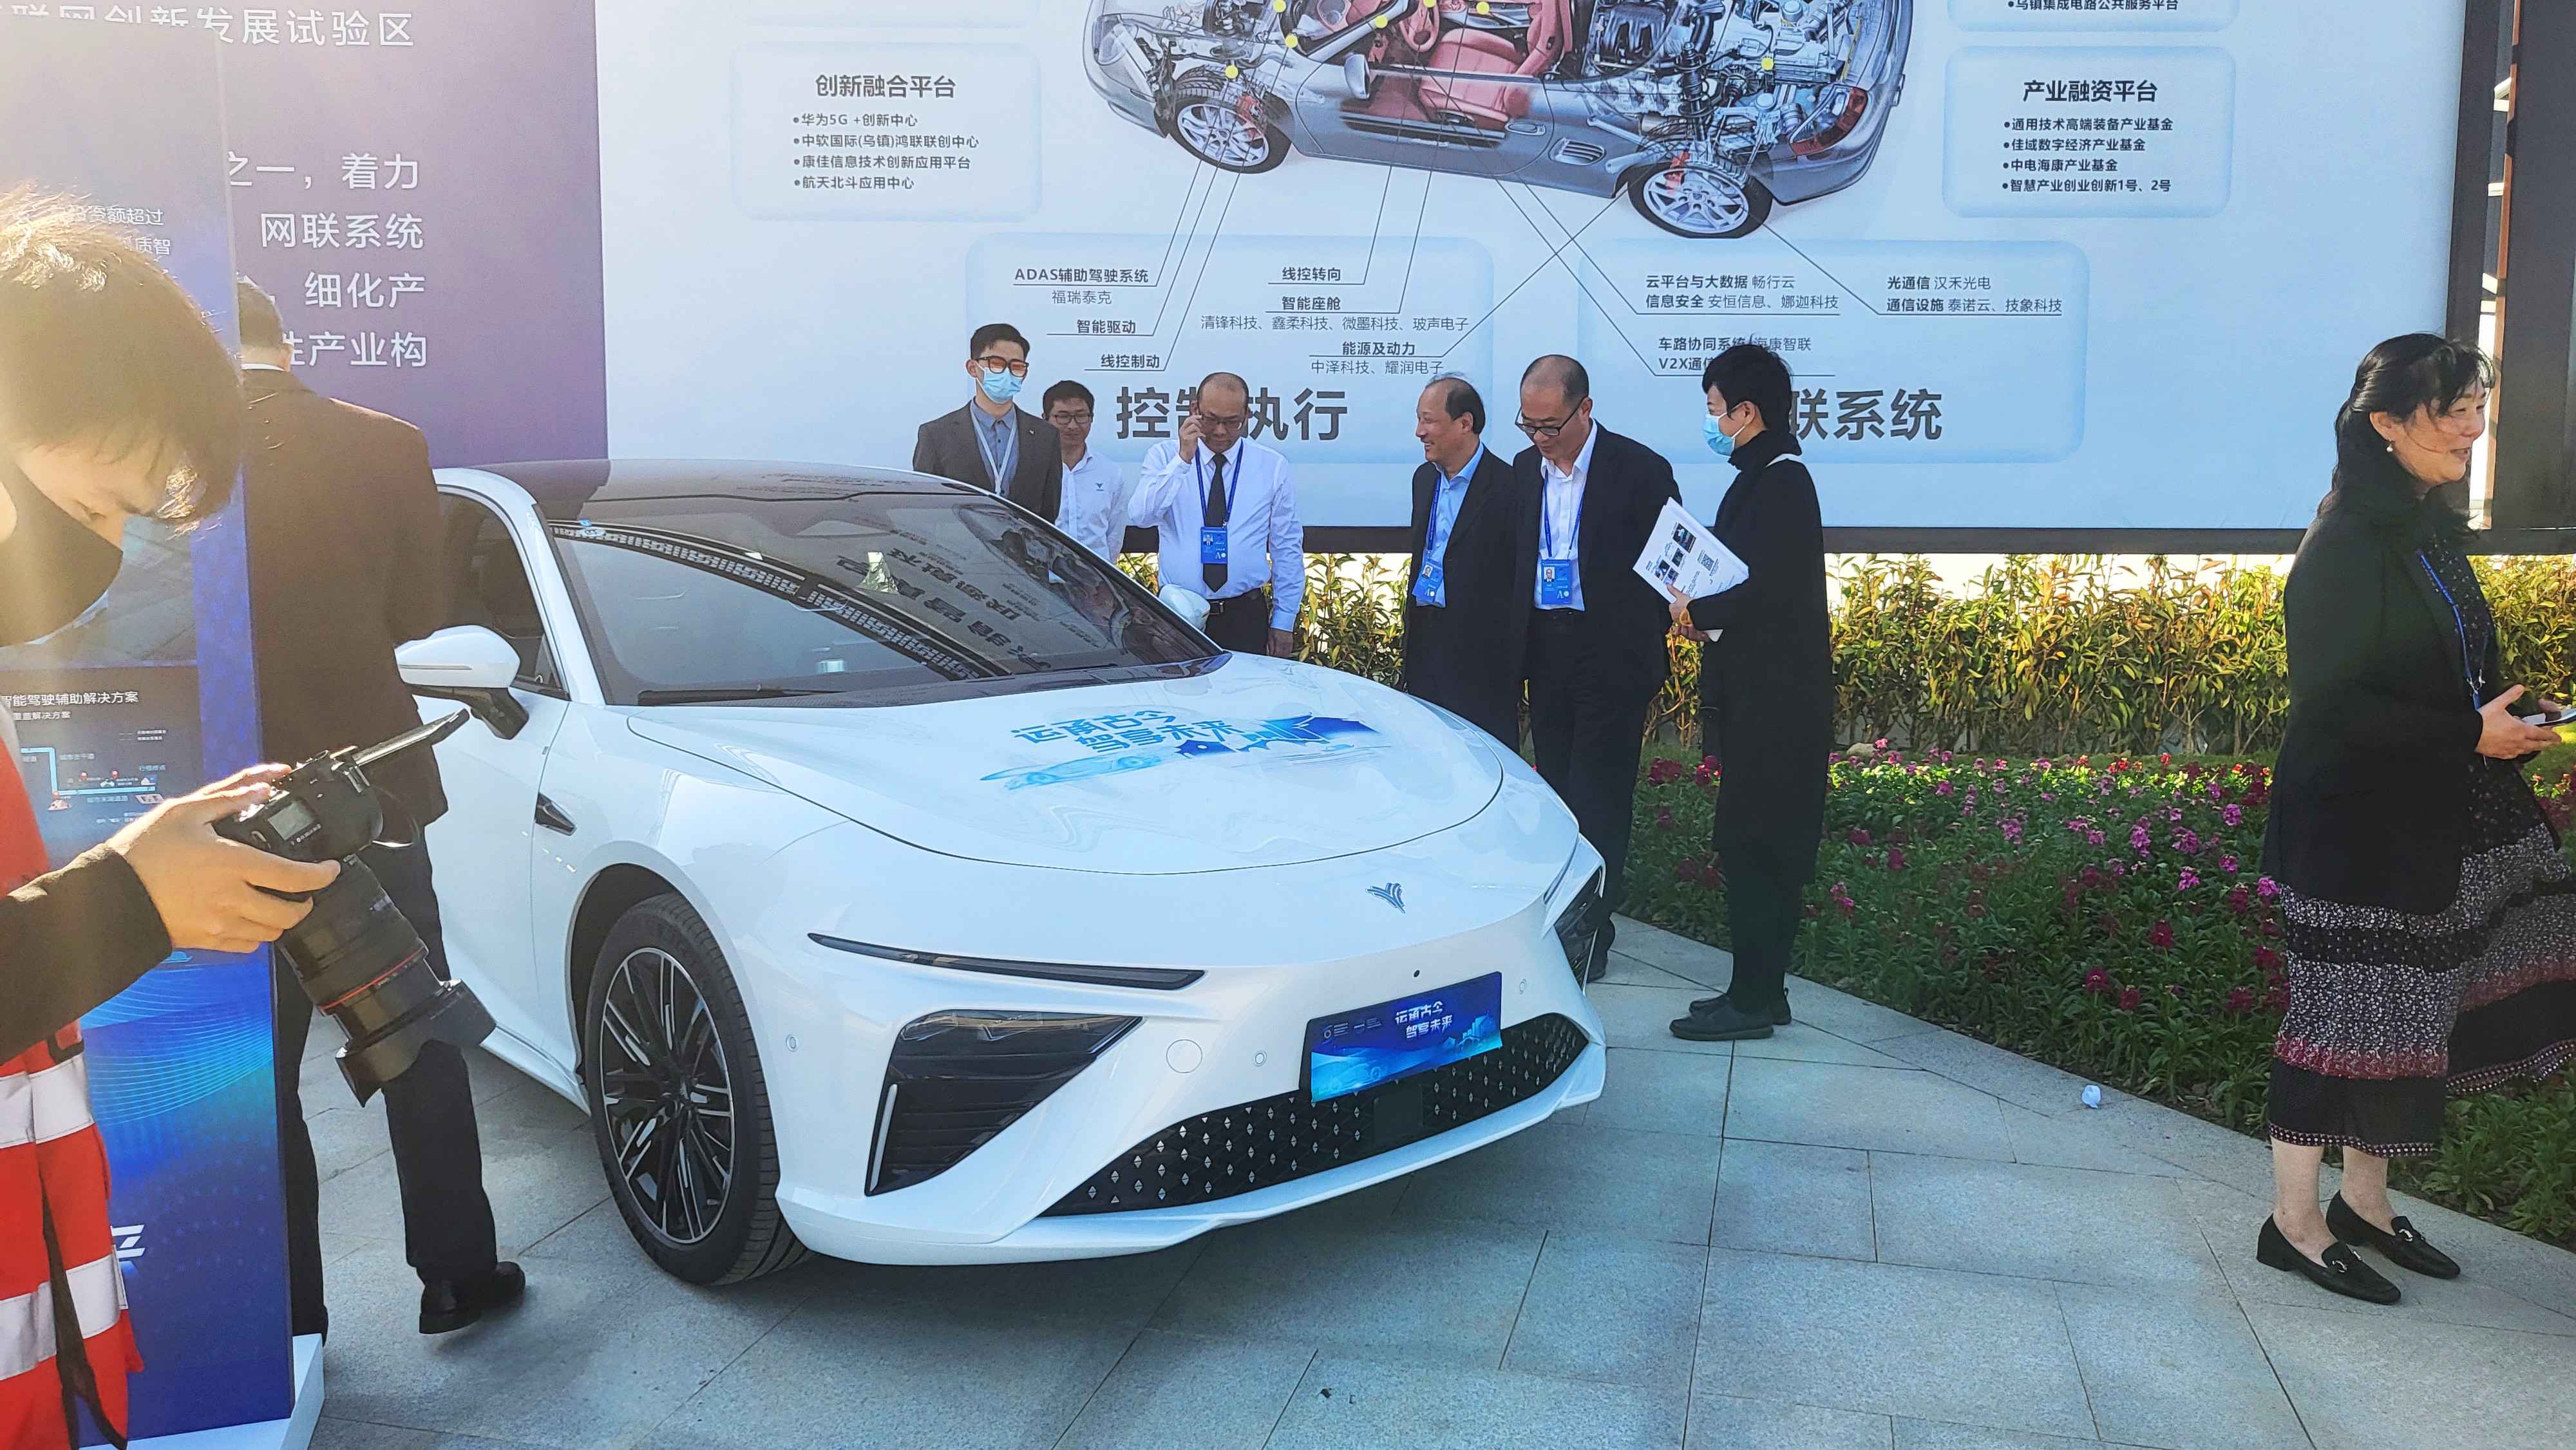 中国汽车加速推动世界汽车产业变革 哪吒汽车闪耀世界互联网大会